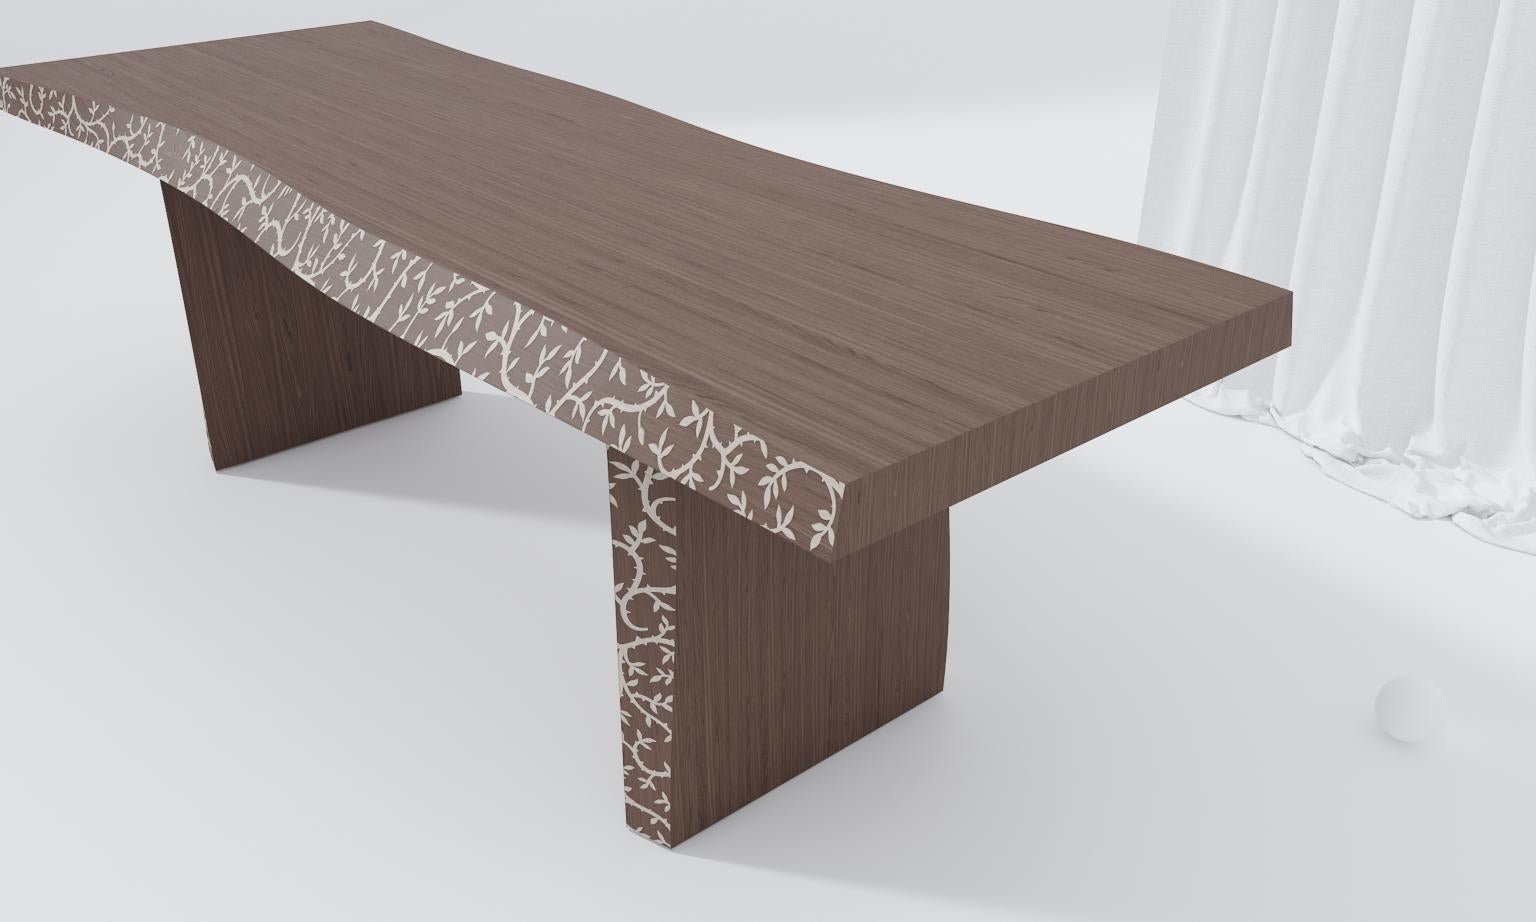 Bark table
Bark table è realizzabile in tre essenze di legno e accostabile a quattro diverse tonalità di intarsio. Le forme sinuose caratterizzate dai profili ramage simulano le irregolarità della corteccia. 
Bark table cabìn be made of three